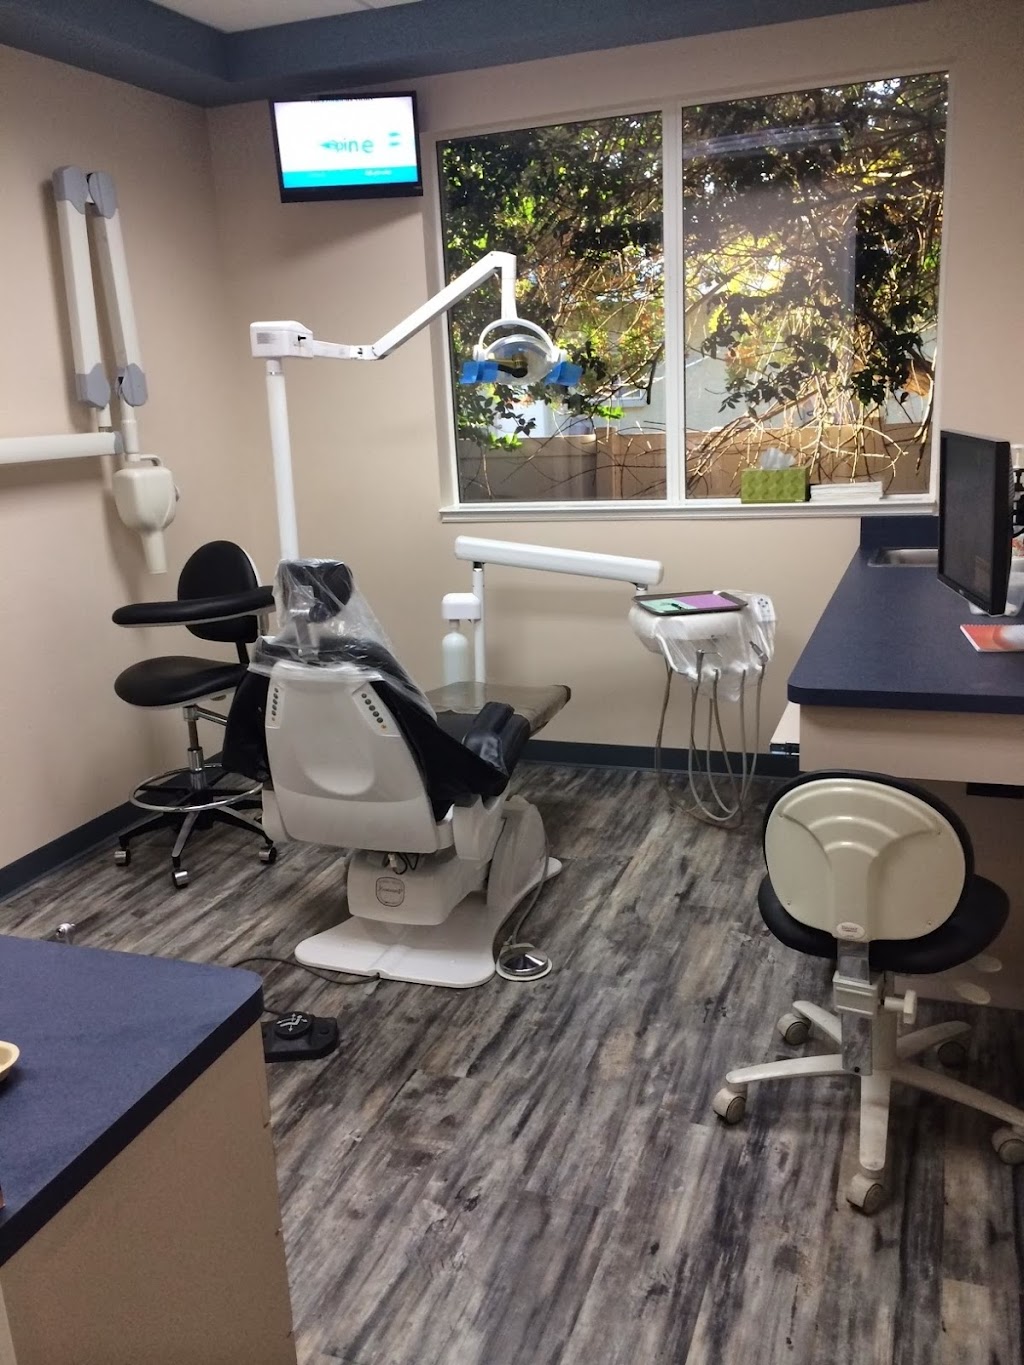 Sarasota Dental Group, Drs. Fabiani and Karp | 2100 Proctor Rd, Sarasota, FL 34231, USA | Phone: (941) 926-0000